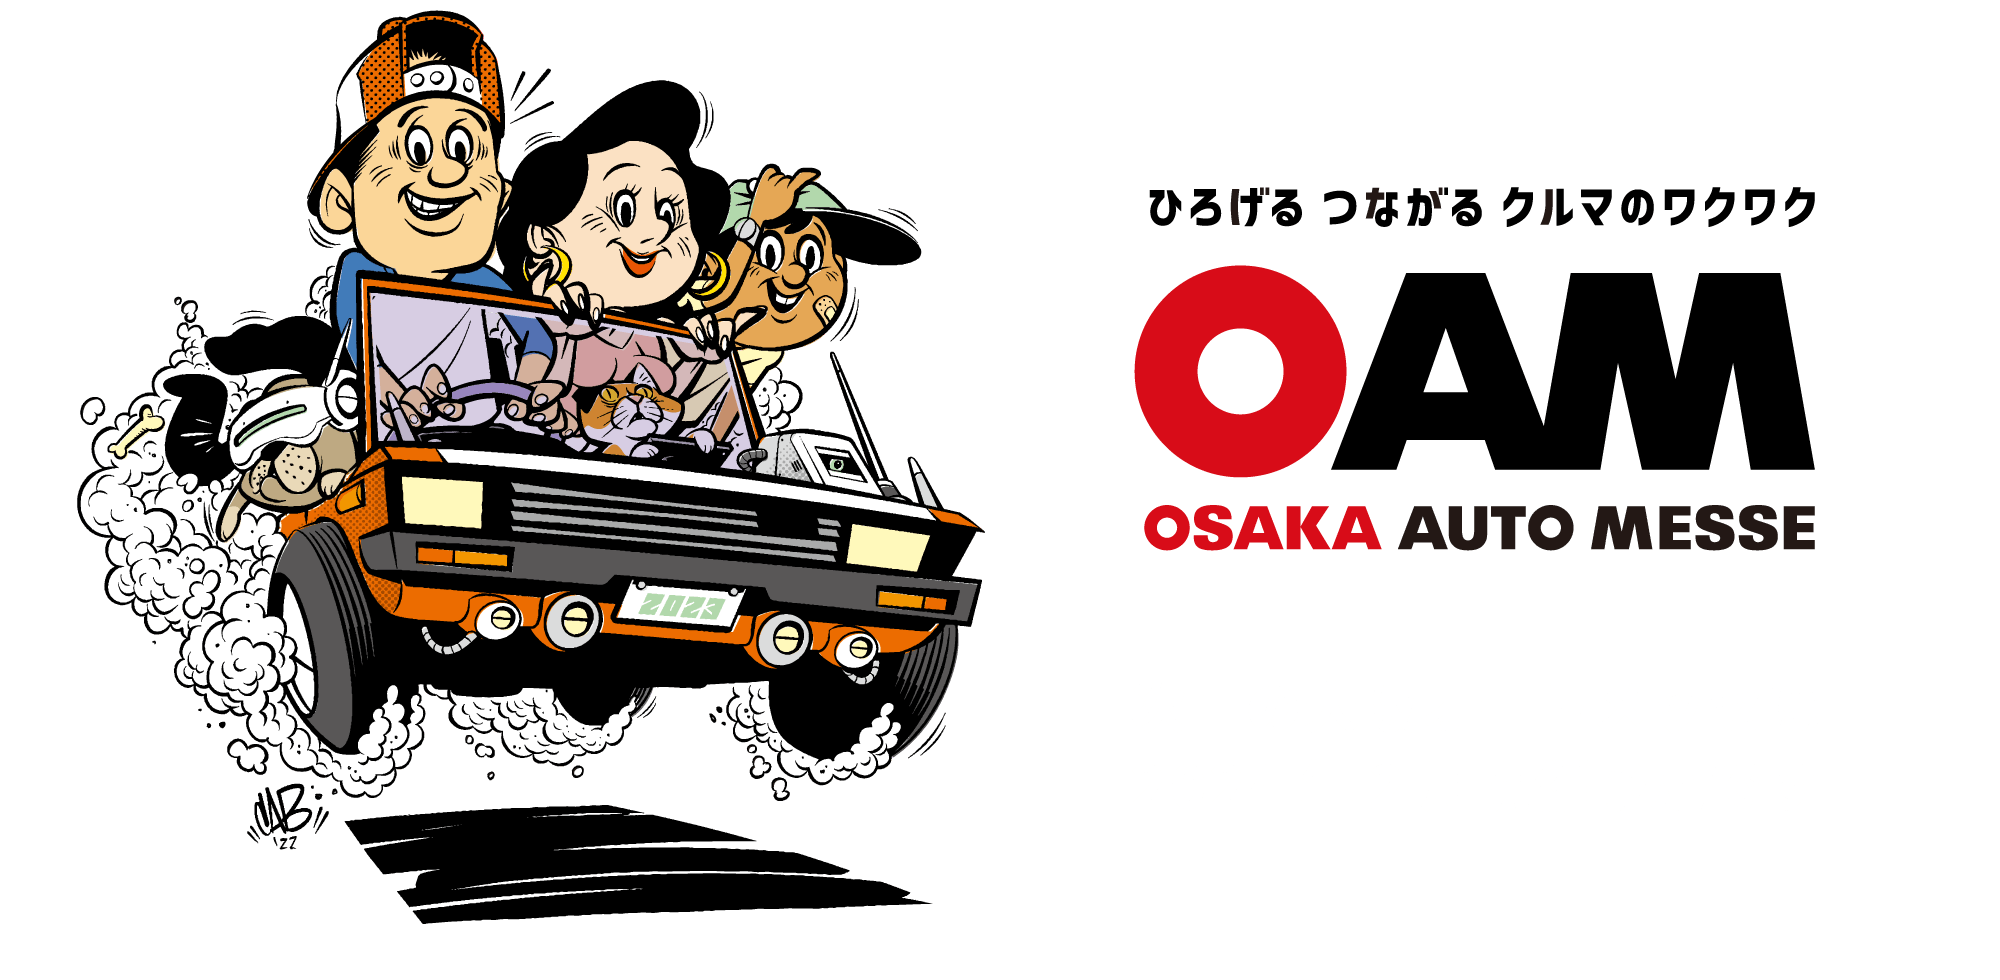 大阪オートメッセ / ひろげるつながるクルマのワクワク / 次回の大阪オートメッセは2024年2月開催予定です。